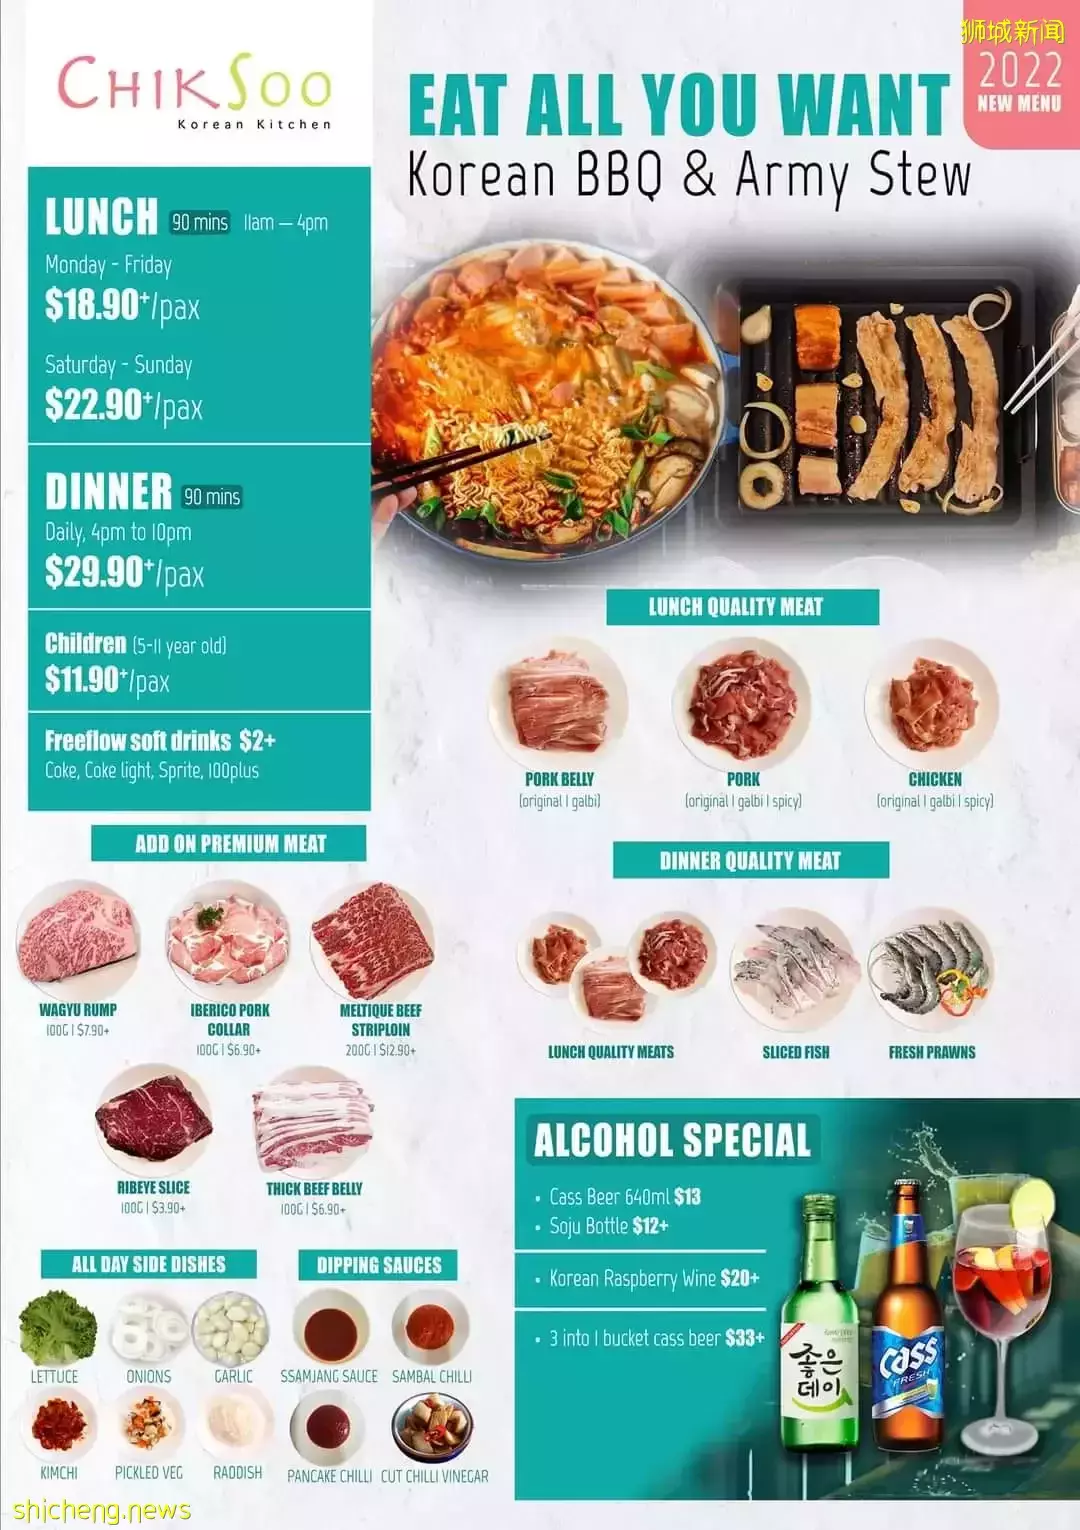 $18.90+無限量吃韓式燒烤&部隊鍋🤤90分鍾雙重享受！還有午間套餐優惠，快來Chiksoo Korean Kitchen